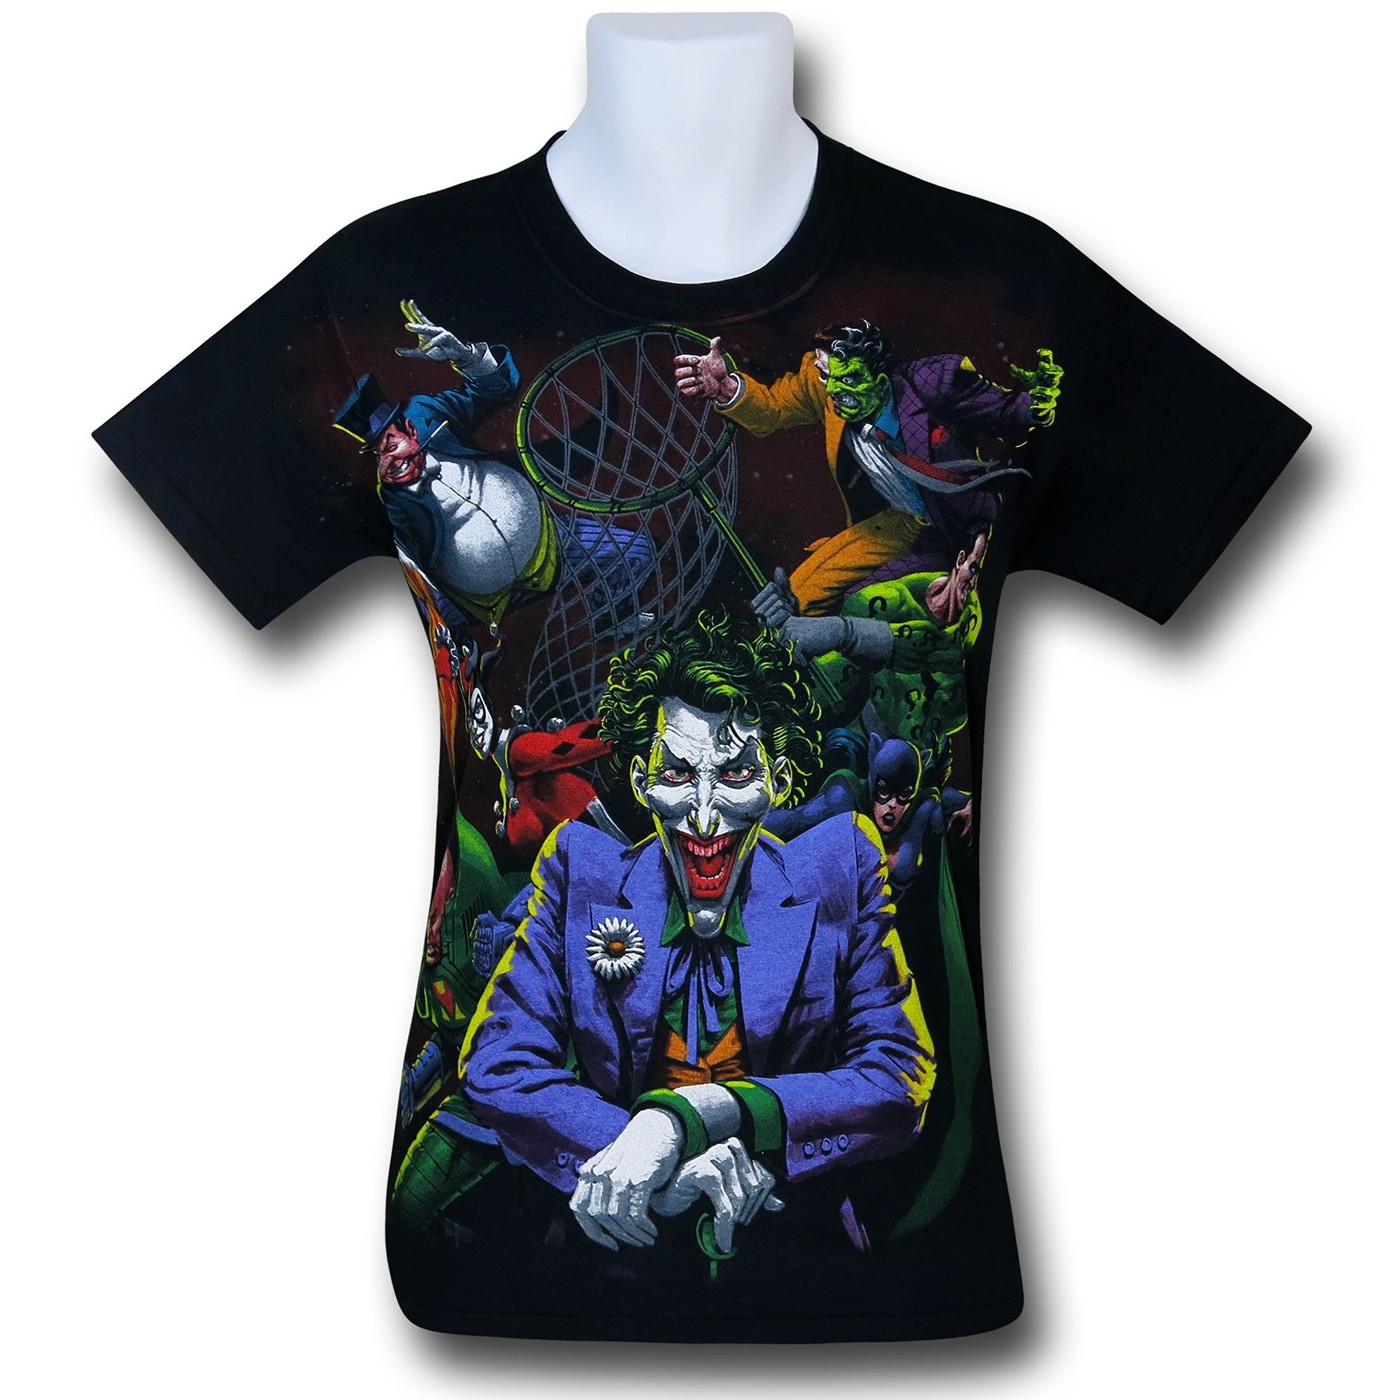 DC Villains Joker's the Boss T-Shirt